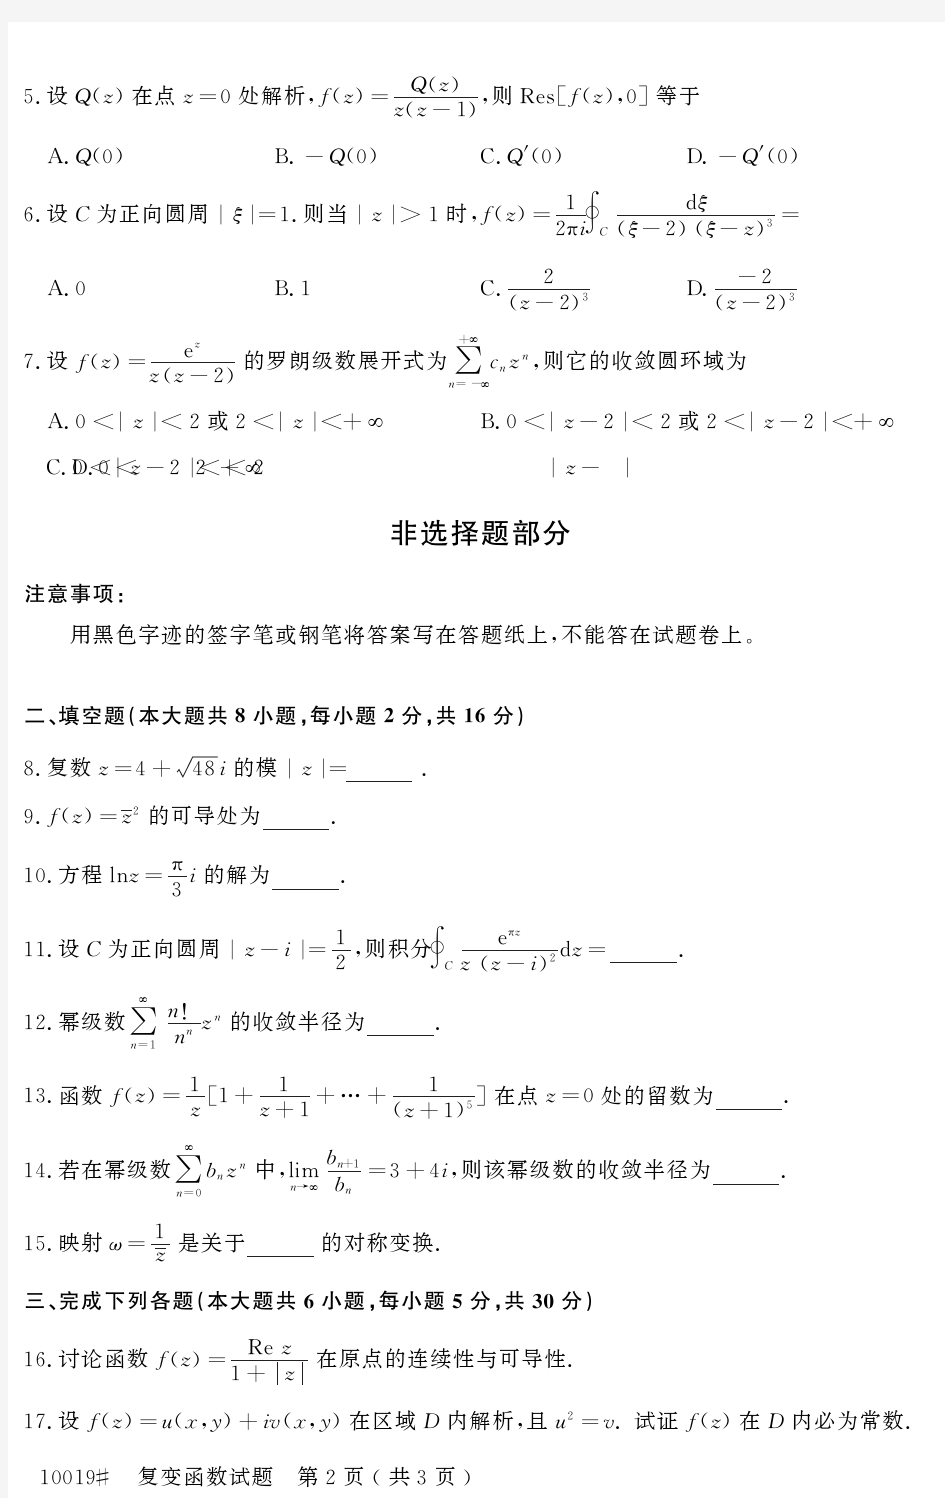 自学考试_浙江省2015年4月高等教育自学考试复变函数试题(10019)